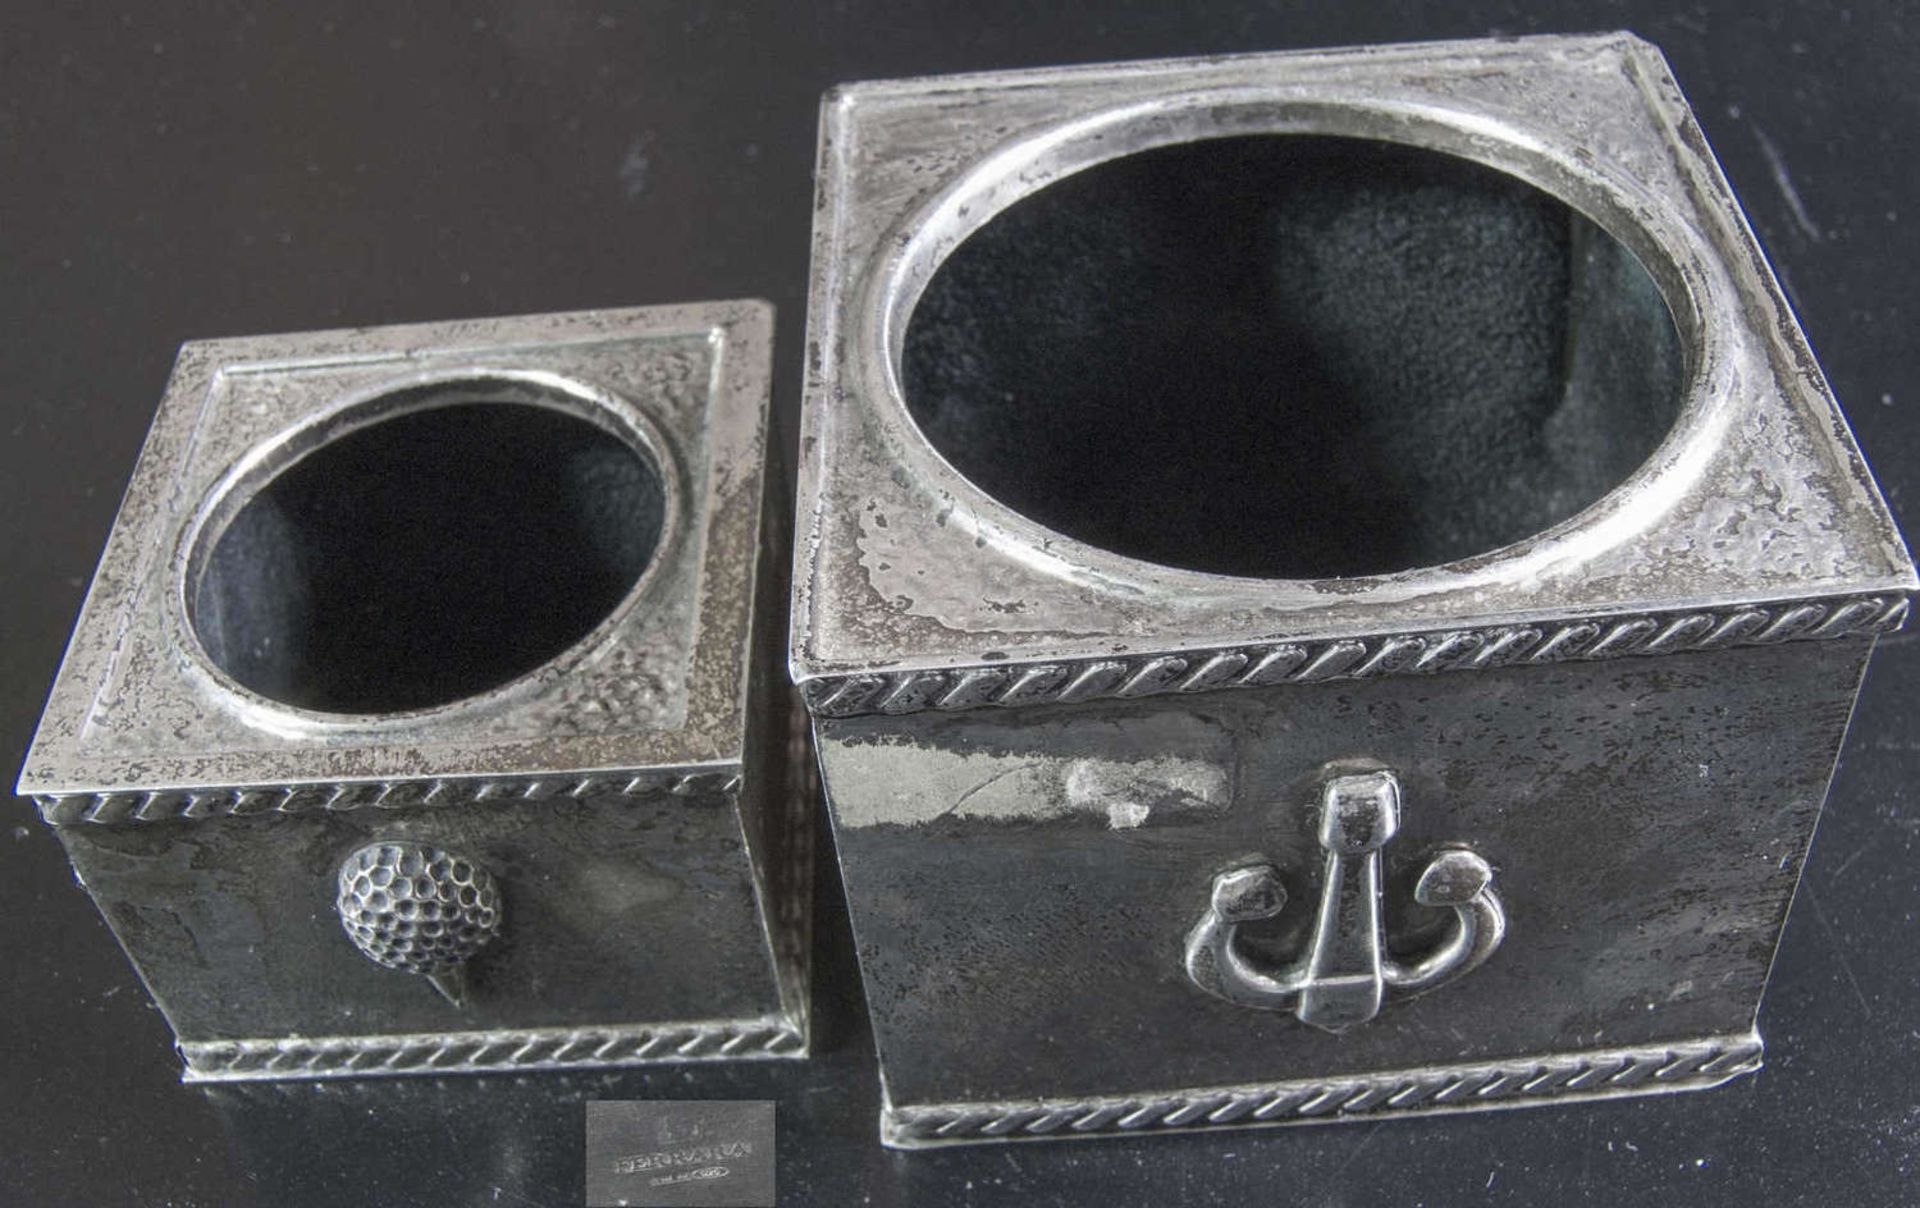 Zwei Ferrara Silber - Dosen. Silber 925, gepunzt. Gesamtgewicht: ca. 114,2 g. Maße: ca. ca. 65 mm